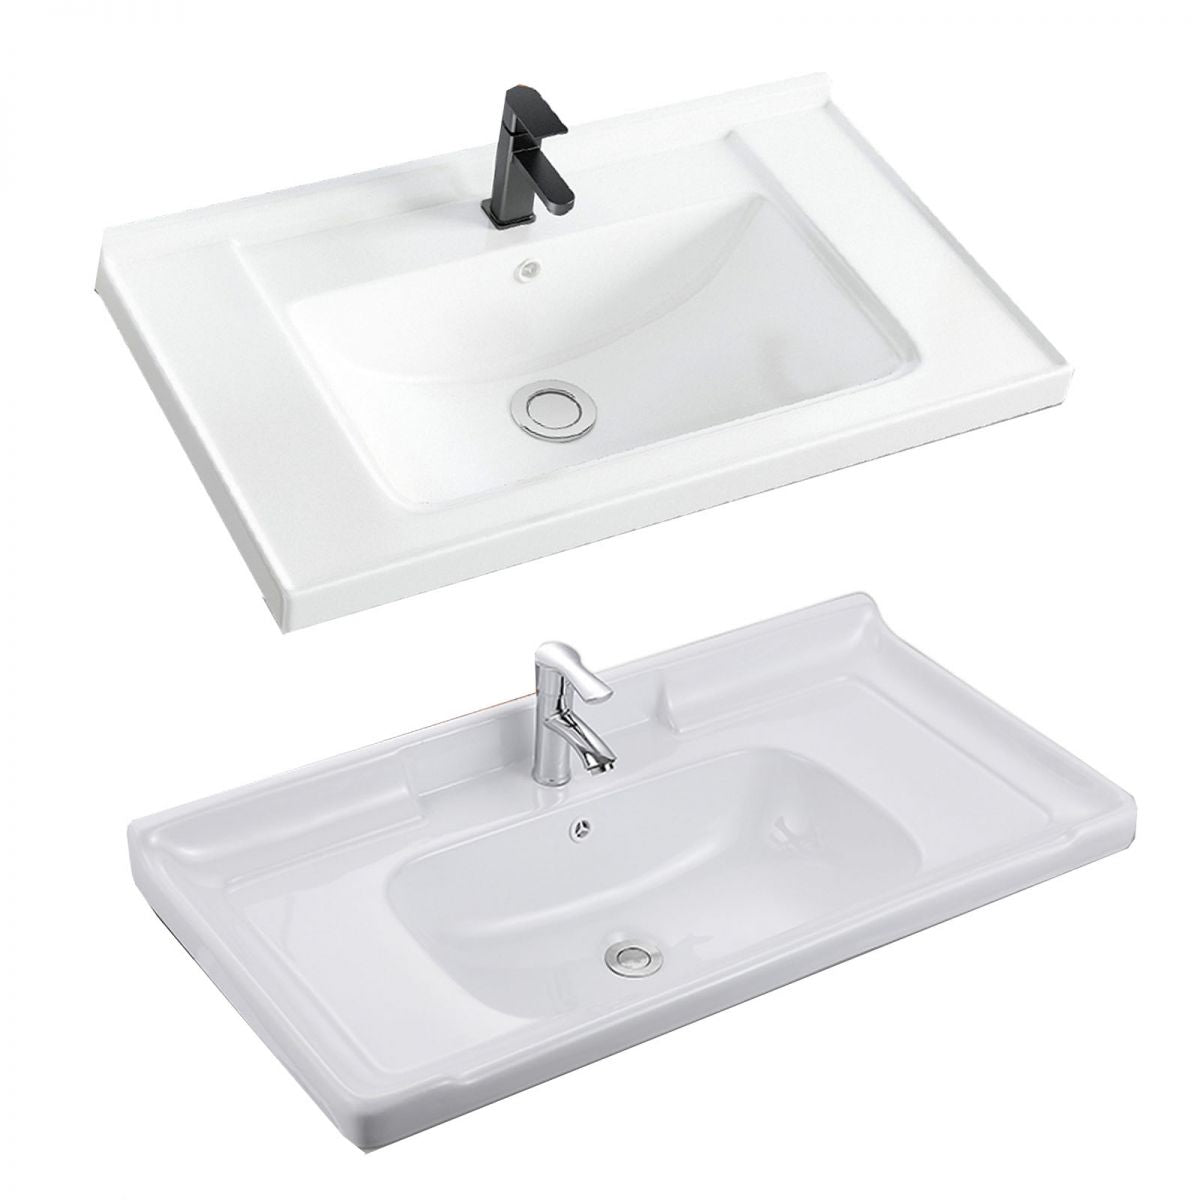 Modern Sink Vanity Free-standing Standard White Vanity Cabinet Clearhalo 'Bathroom Remodel & Bathroom Fixtures' 'Bathroom Vanities' 'bathroom_vanities' 'Home Improvement' 'home_improvement' 'home_improvement_bathroom_vanities' 1200x1200_1b59f5d0-61e2-40f8-902c-a309ec495937